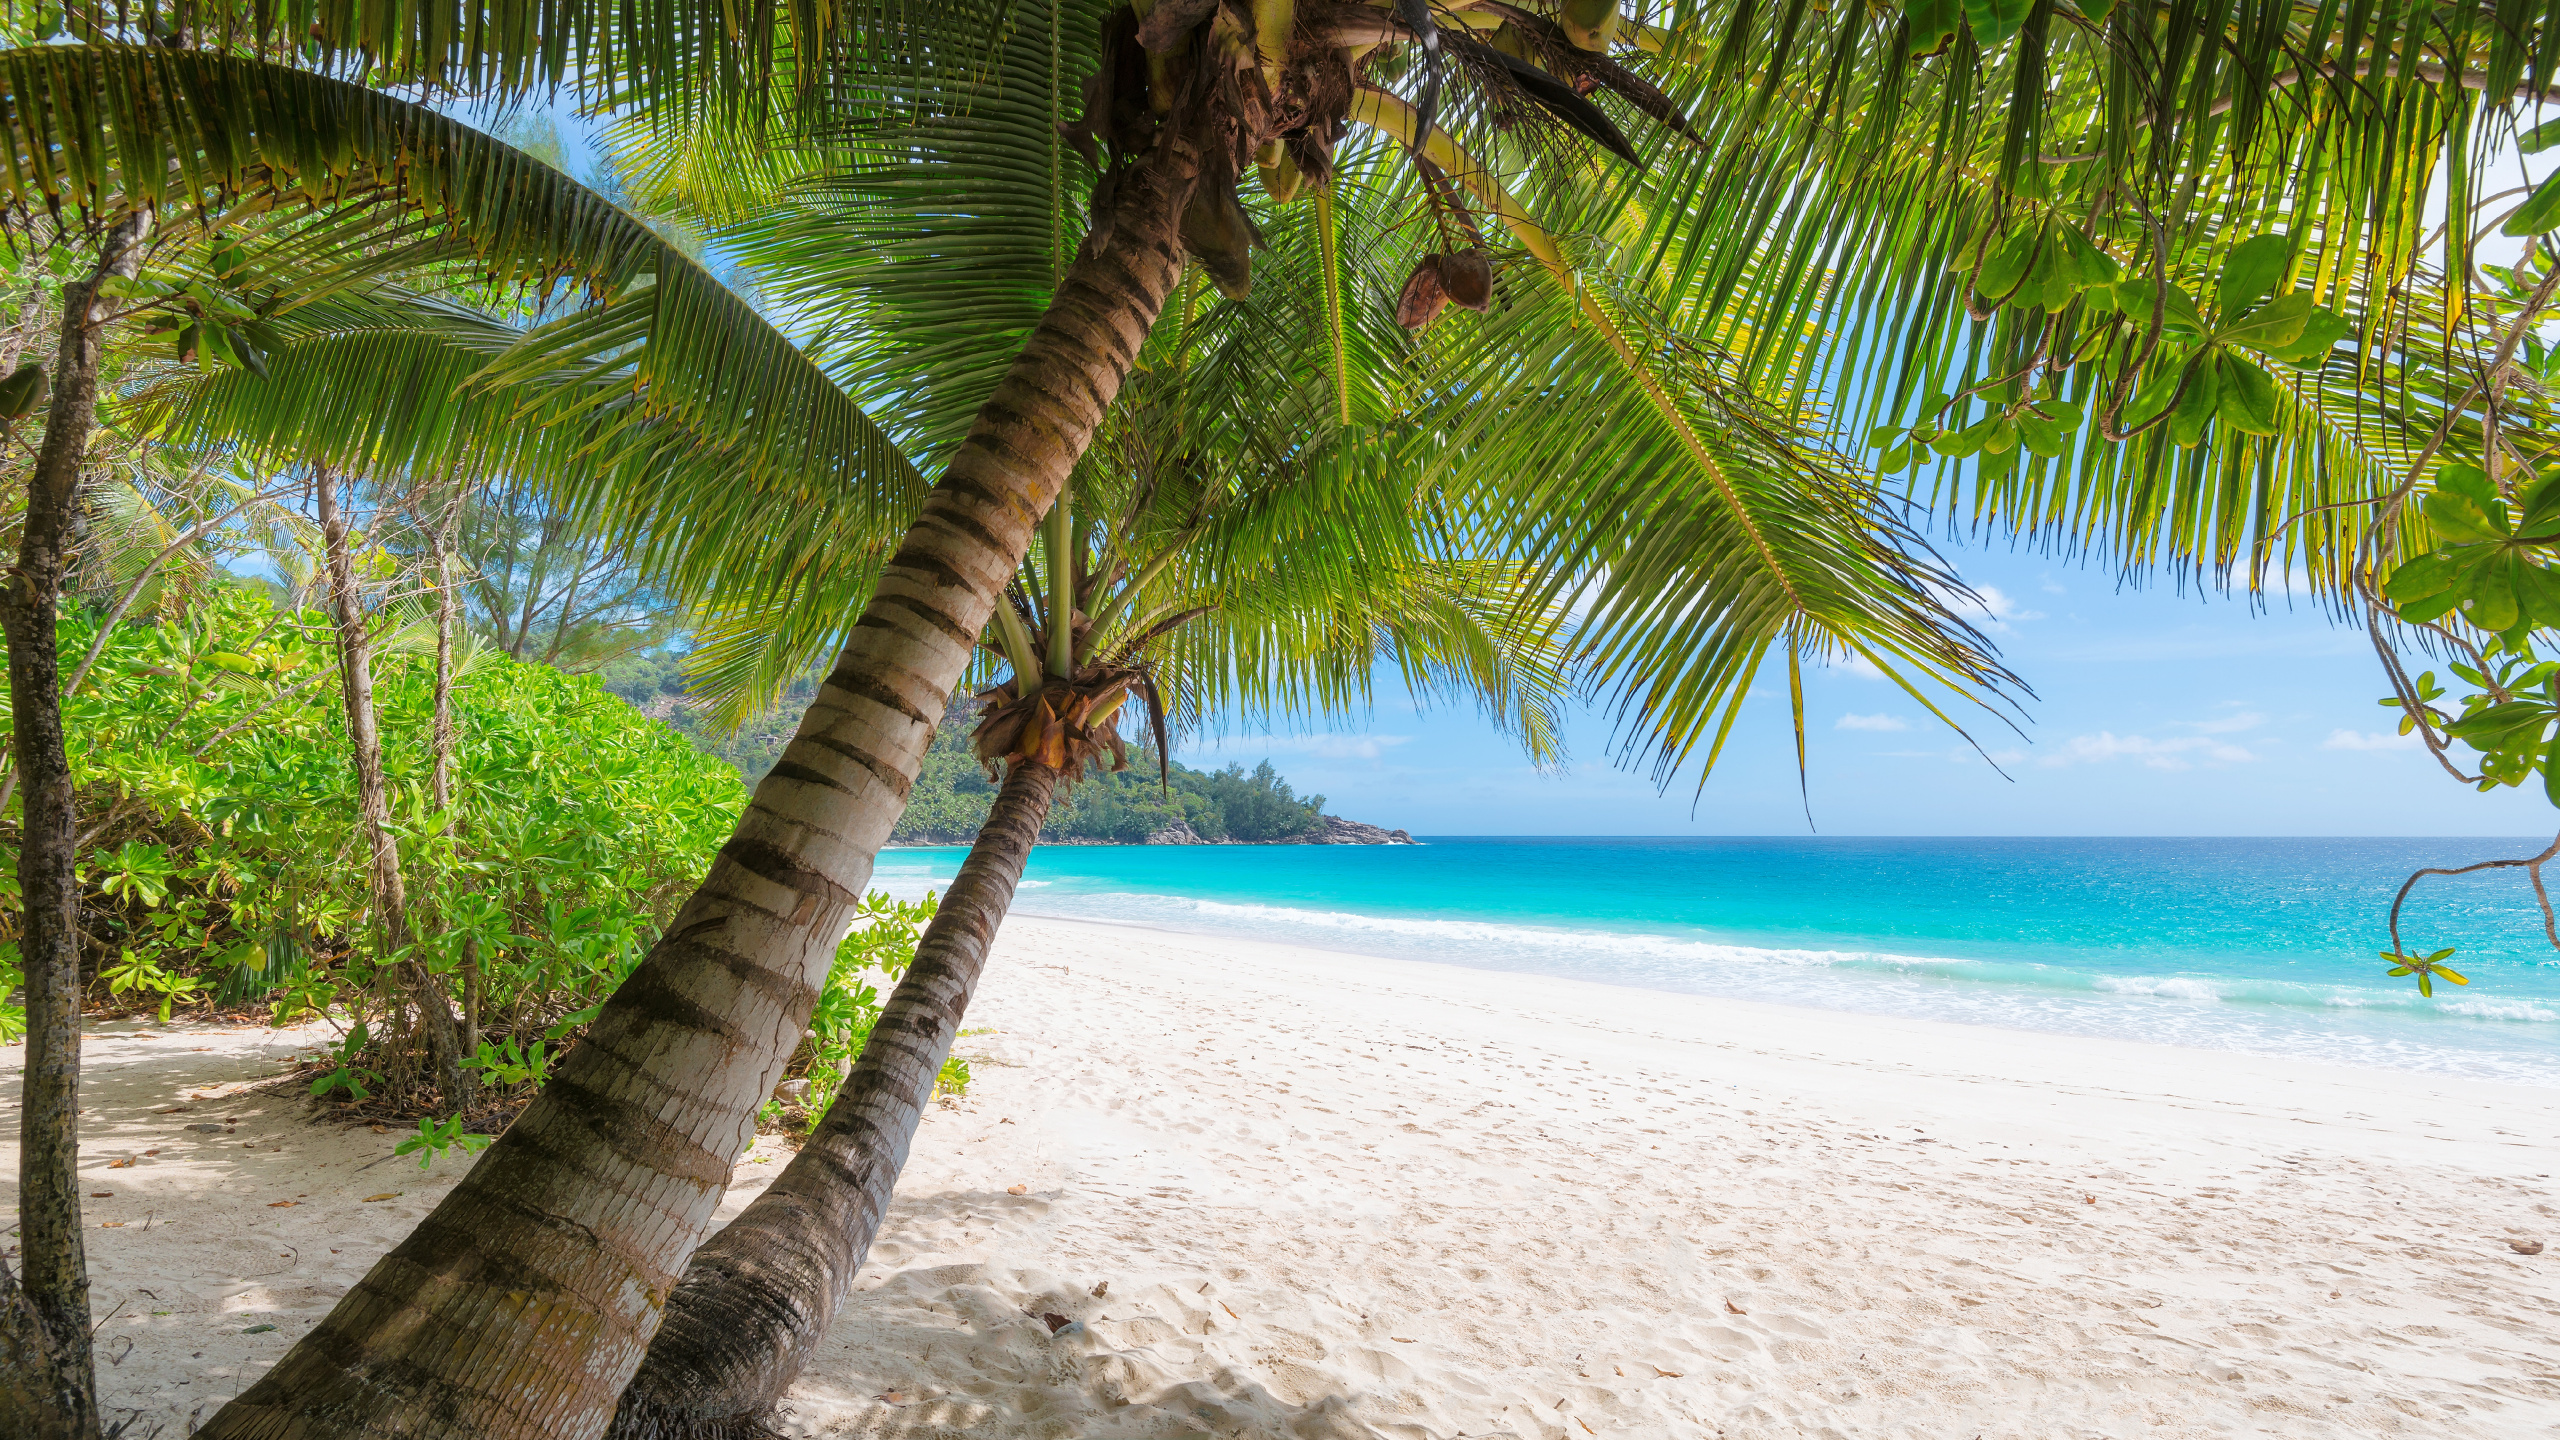 岸边, 热带地区, 加勒比, 度假, 度假村 壁纸 2560x1440 允许